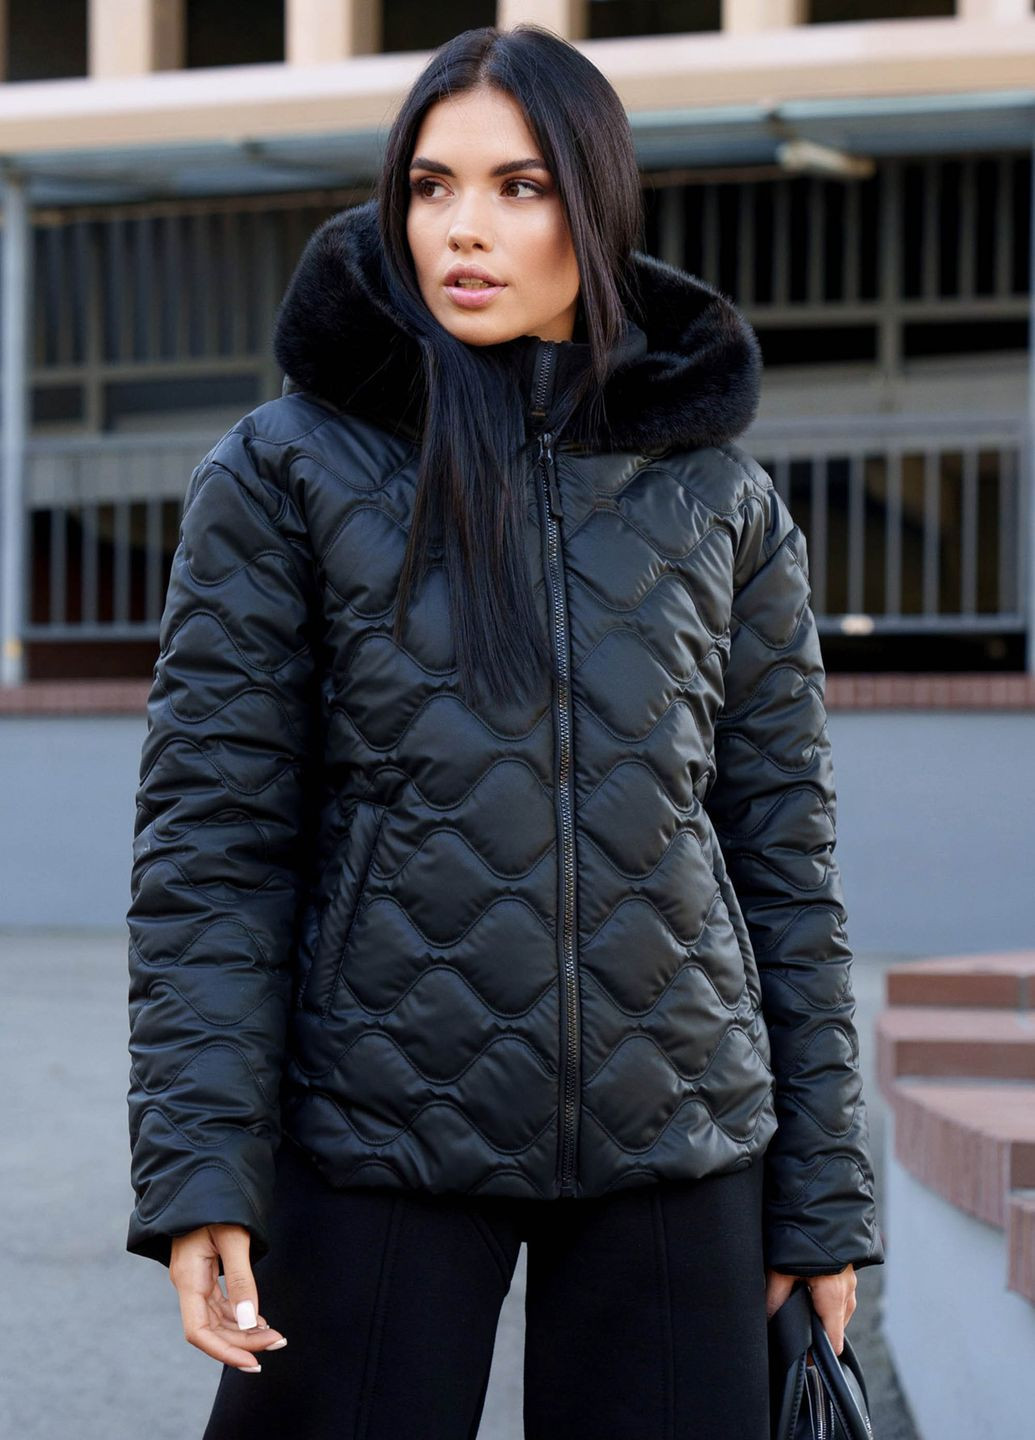 Черная зимняя стильная короткая куртка на утеплителе черного цвета Jadone Fashion Курточка